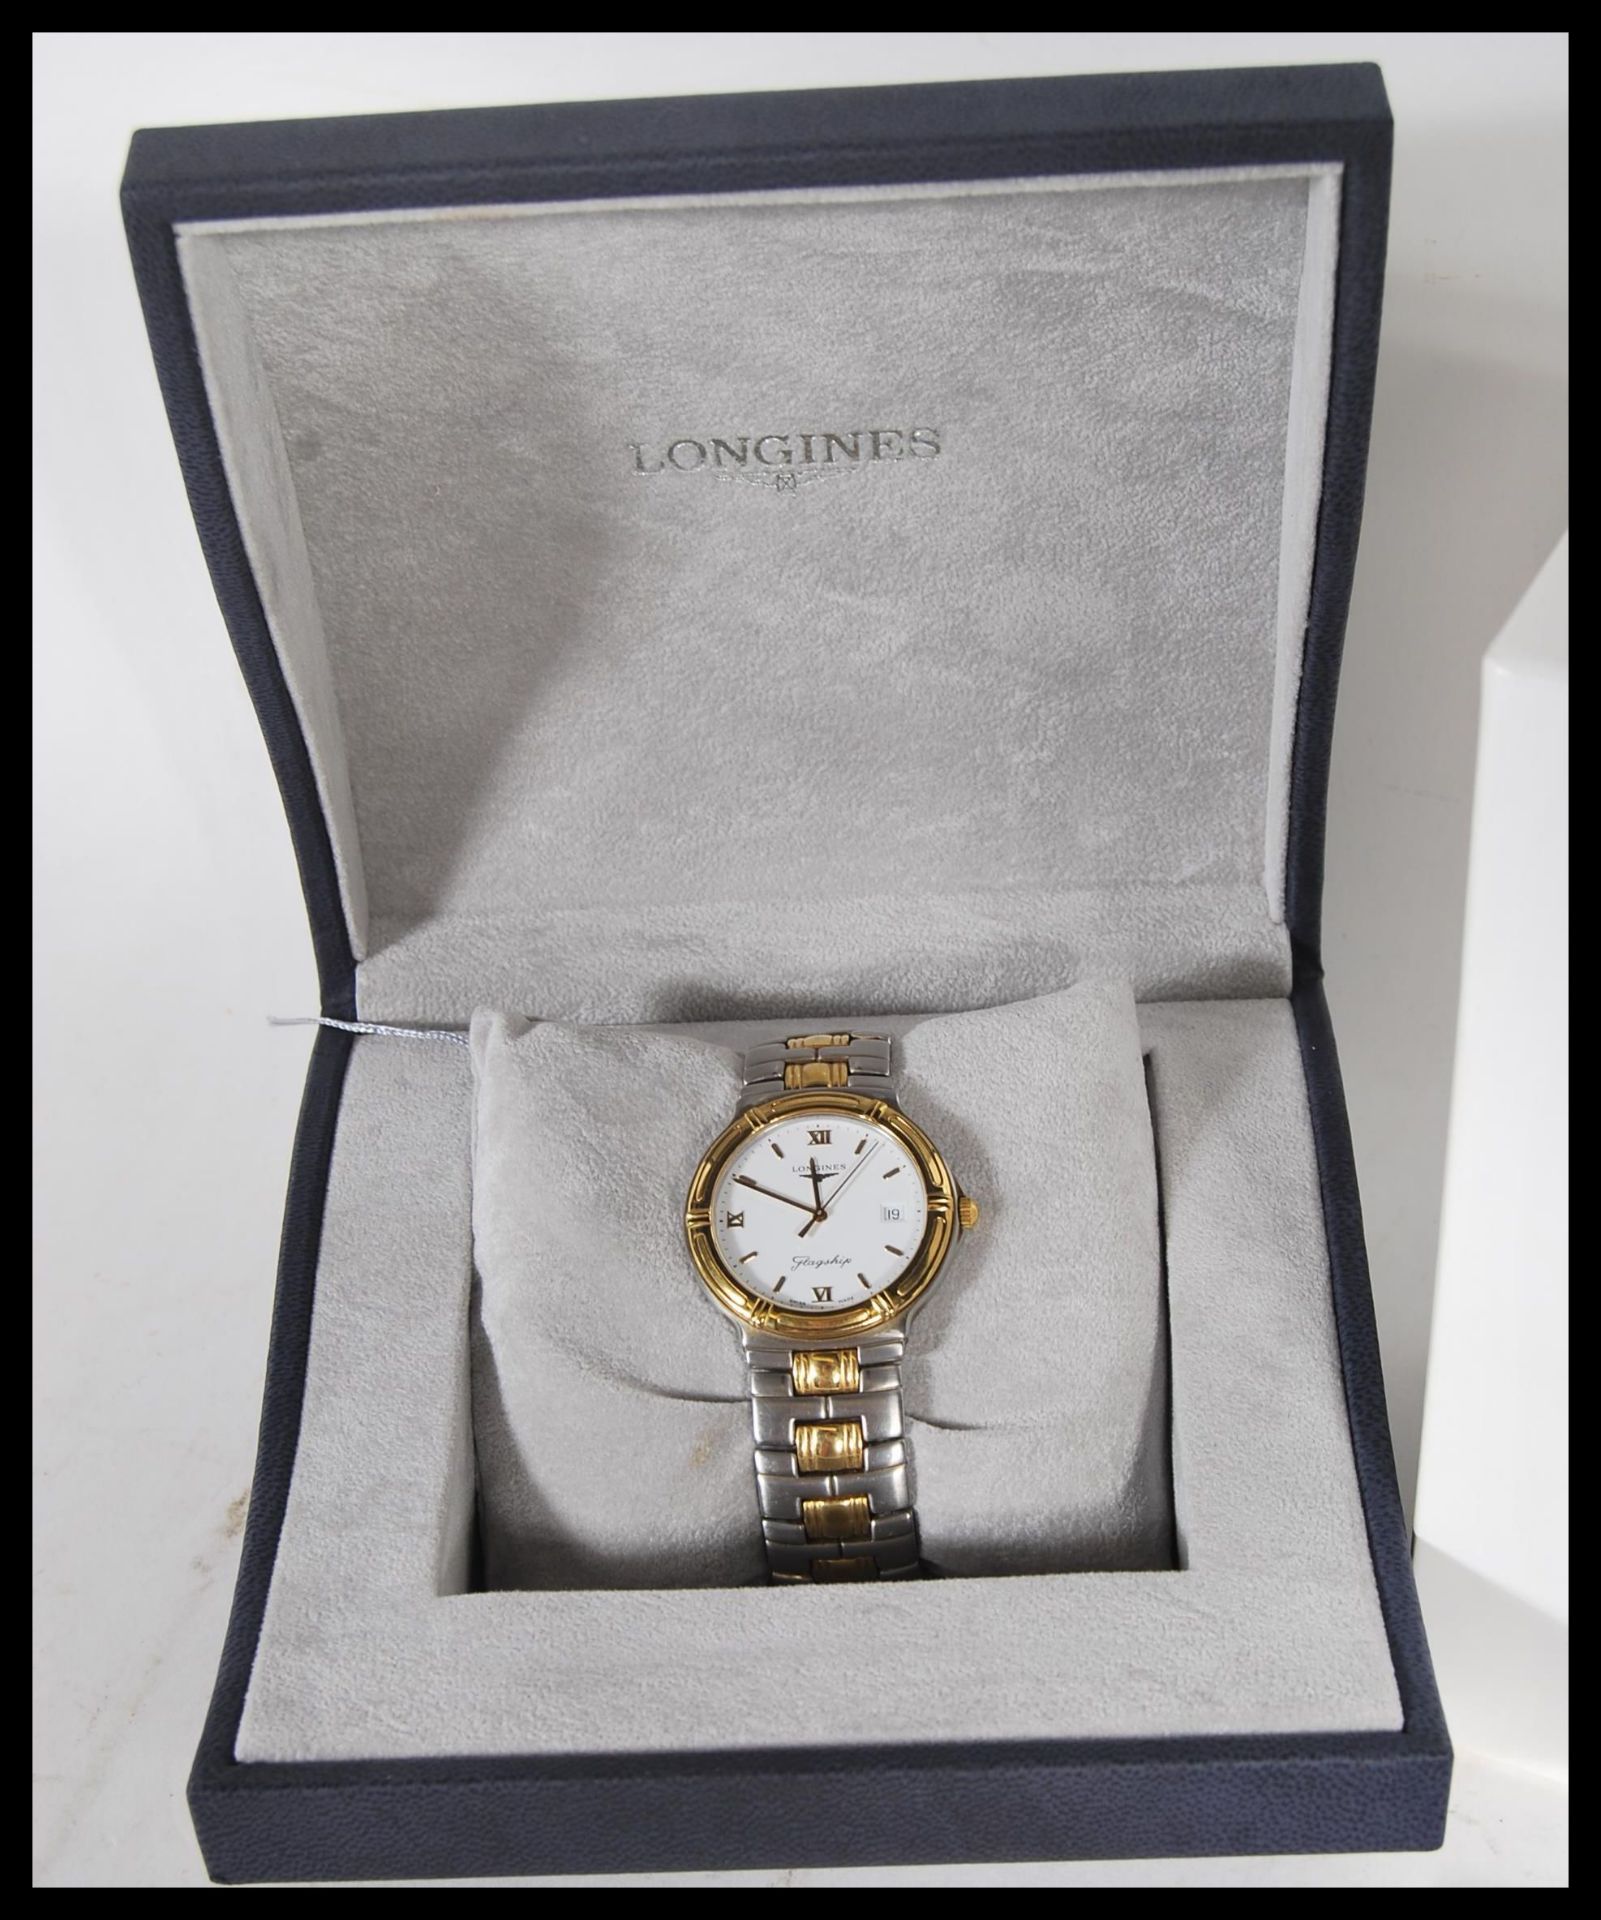 Longines, Flagship, Bi-colour bracelet watch, no. 28163672, current model Movement L5 651 3. - Image 3 of 7